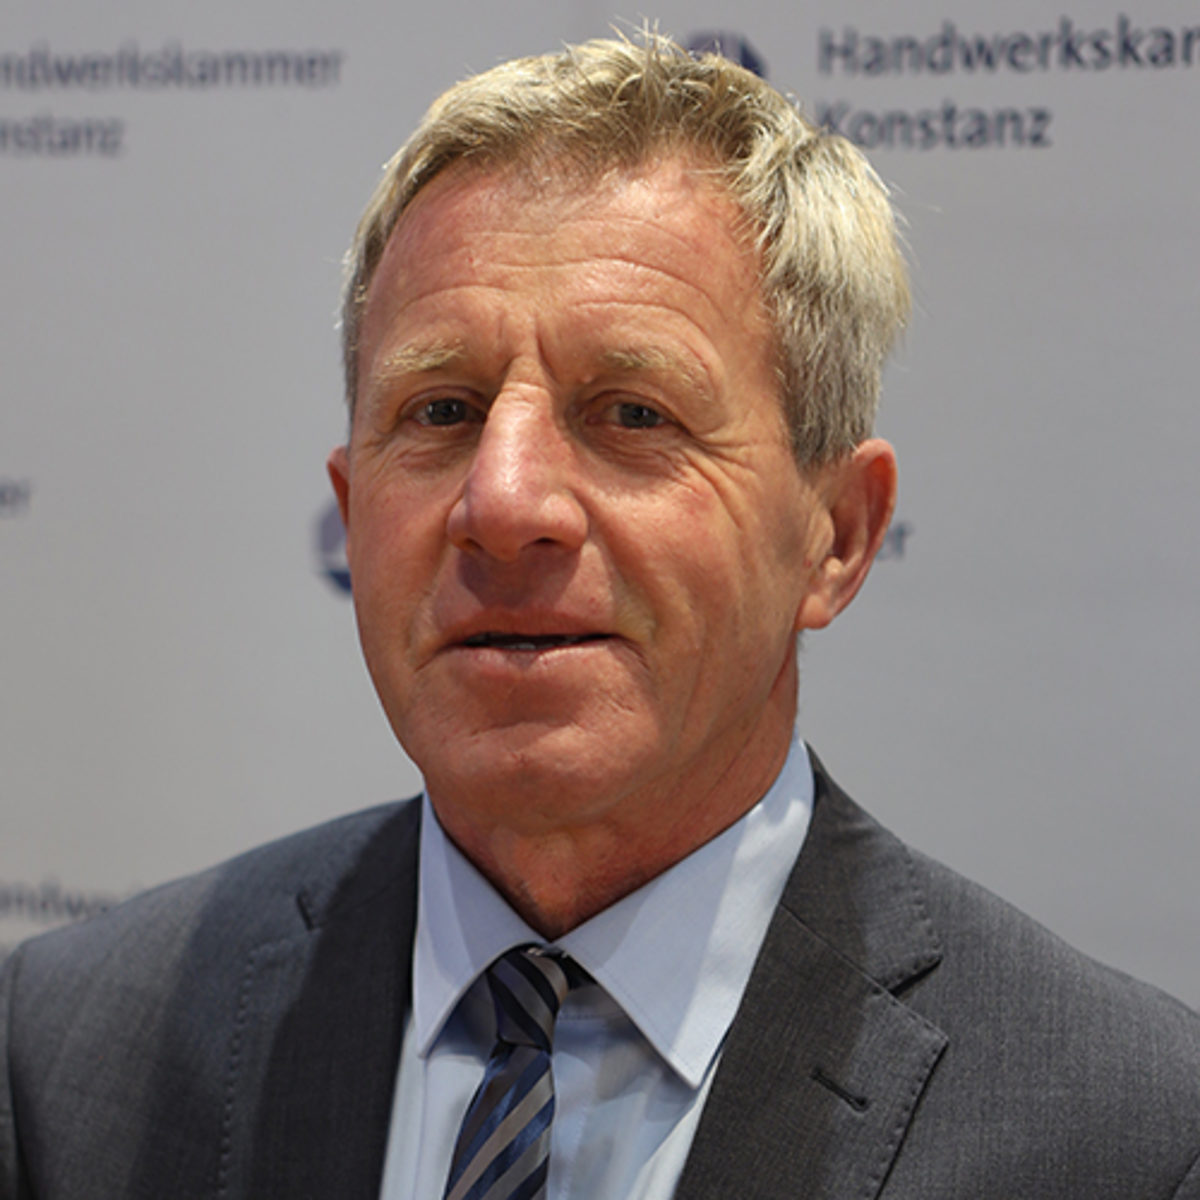 Andreas Frank, Mitglied im Vorstand der Handwerkskammer Konstanz